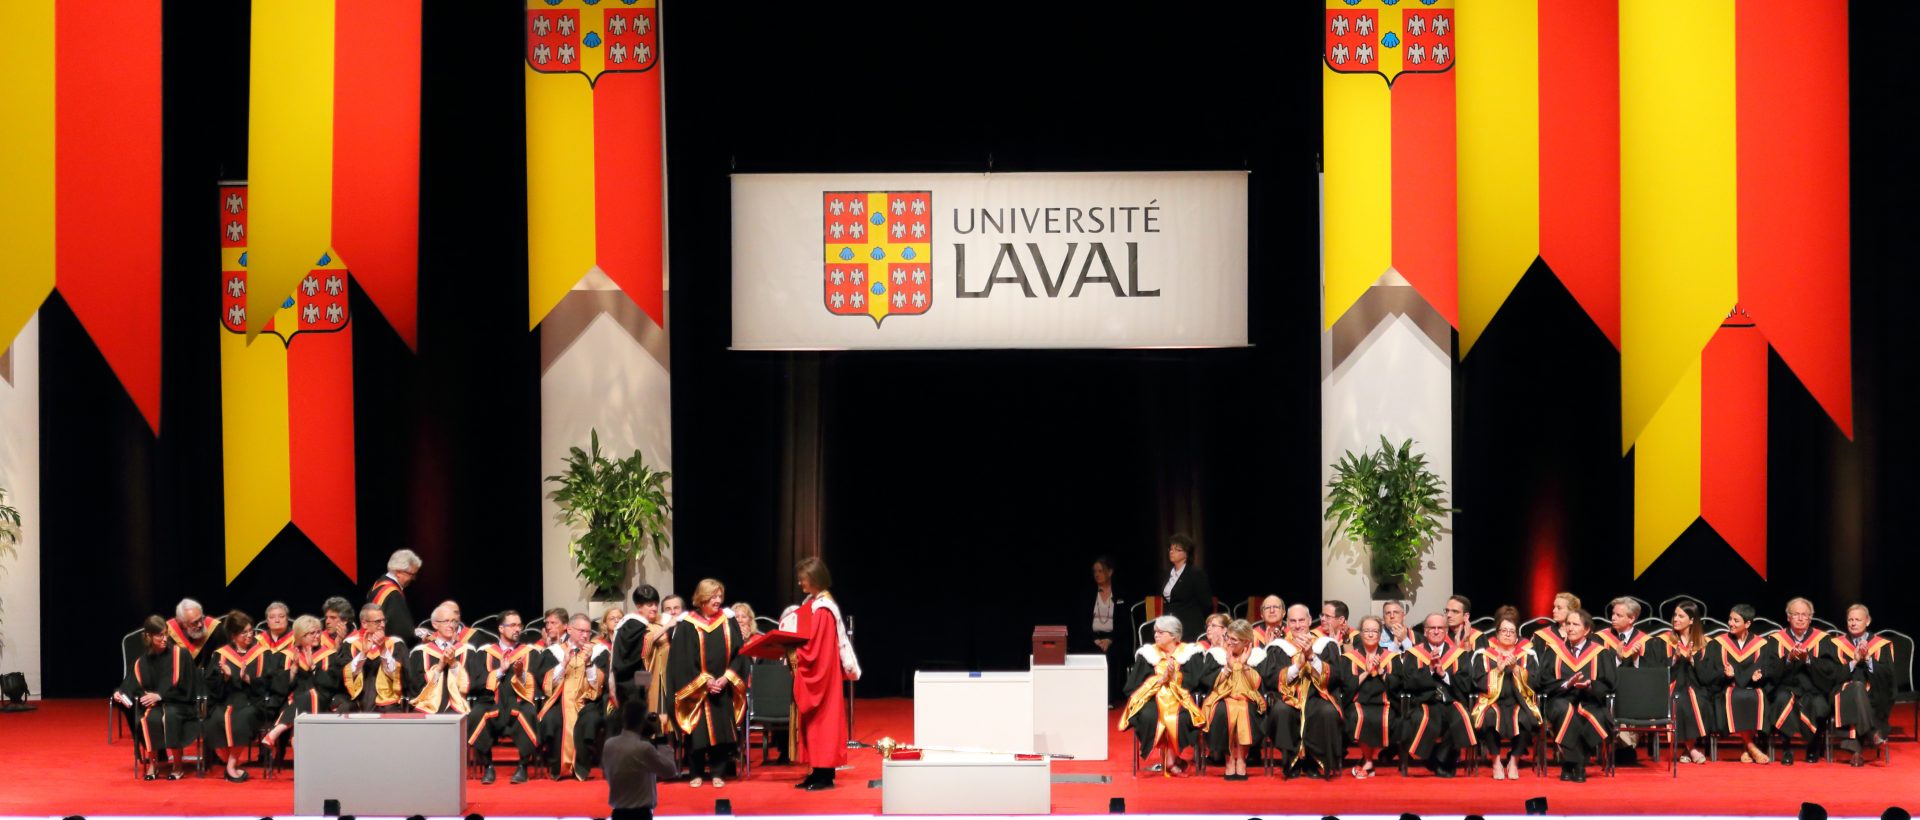 IVADO et l’Université Laval allient leurs forces